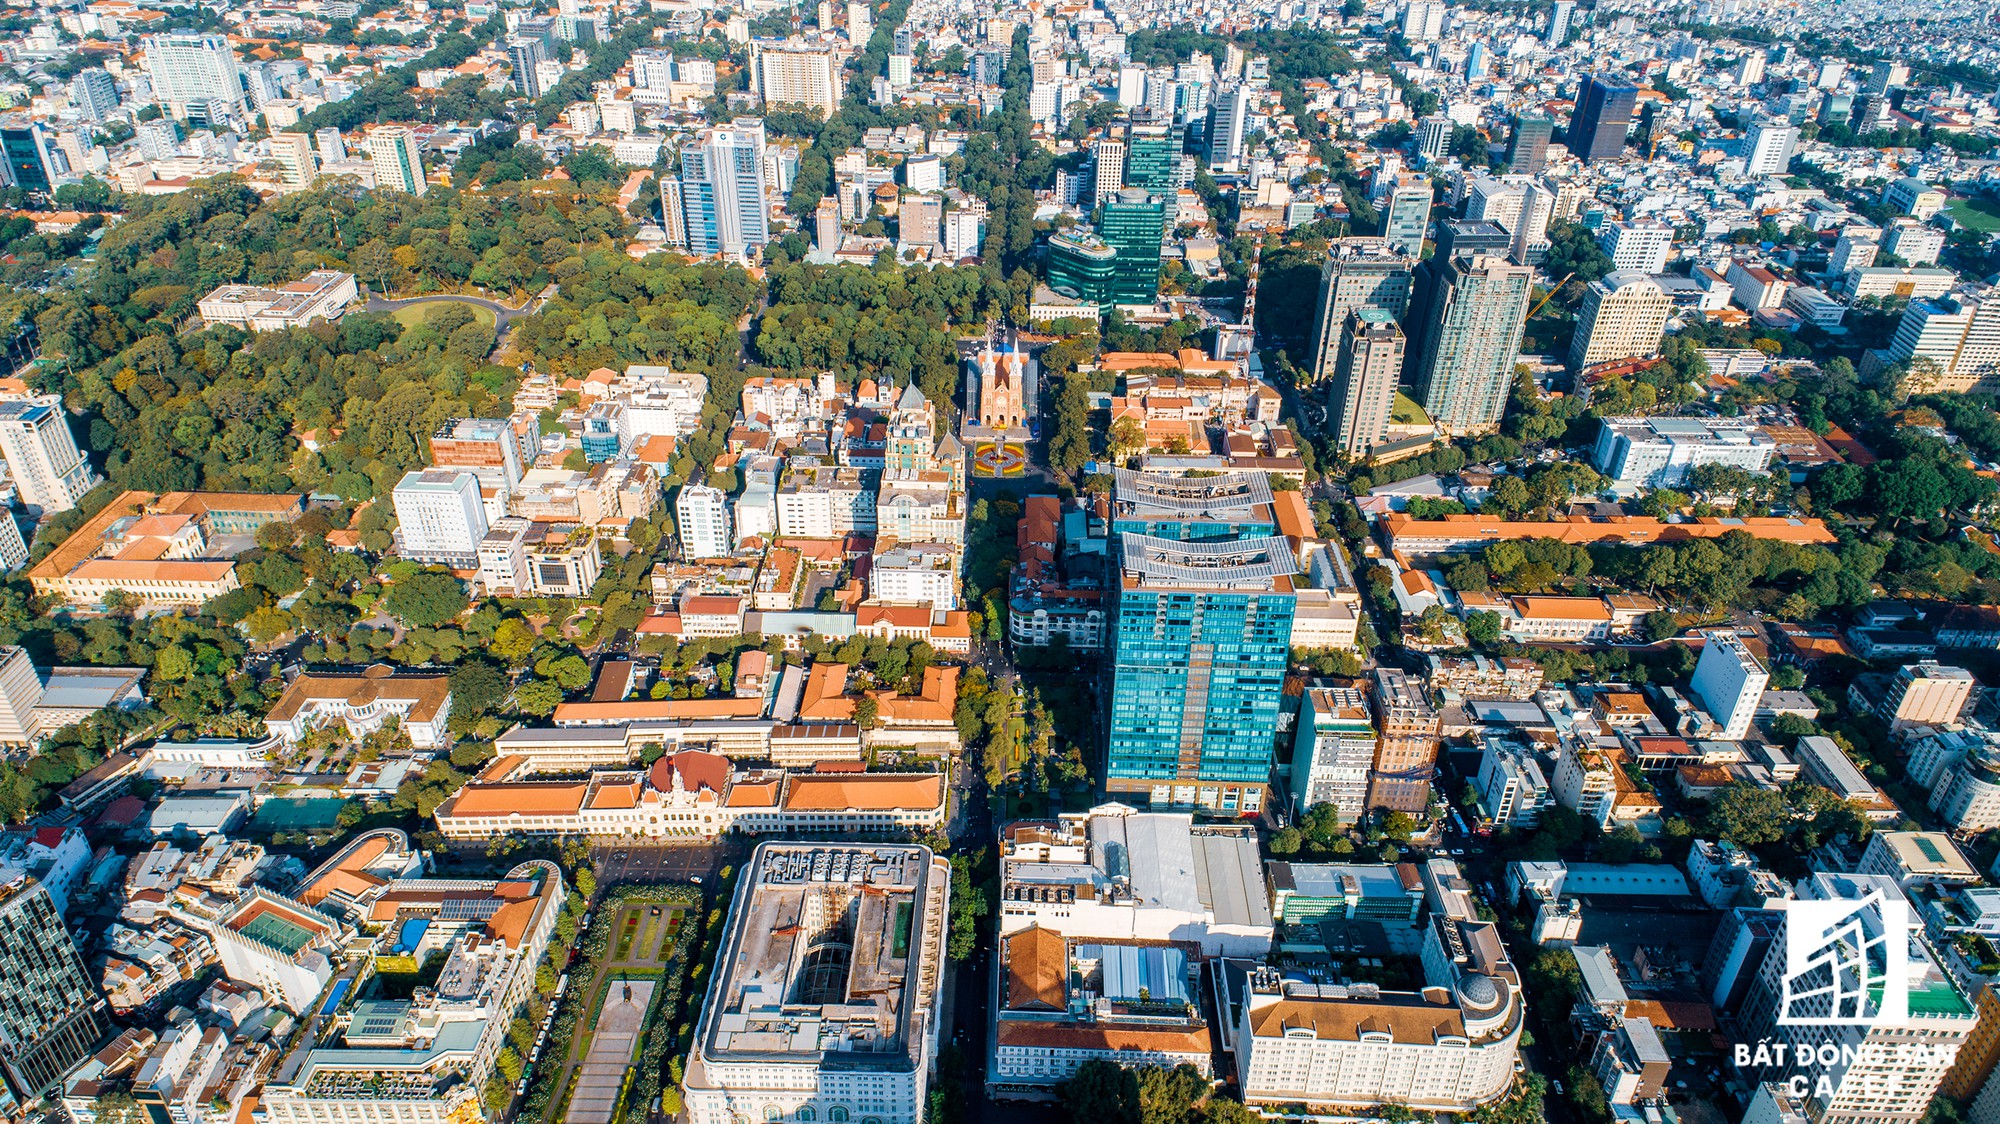 Toàn cảnh con đường có giá bất động sản đắt đỏ nhất Việt Nam, lên tới 2 tỷ đồng một m2 - Ảnh 2.